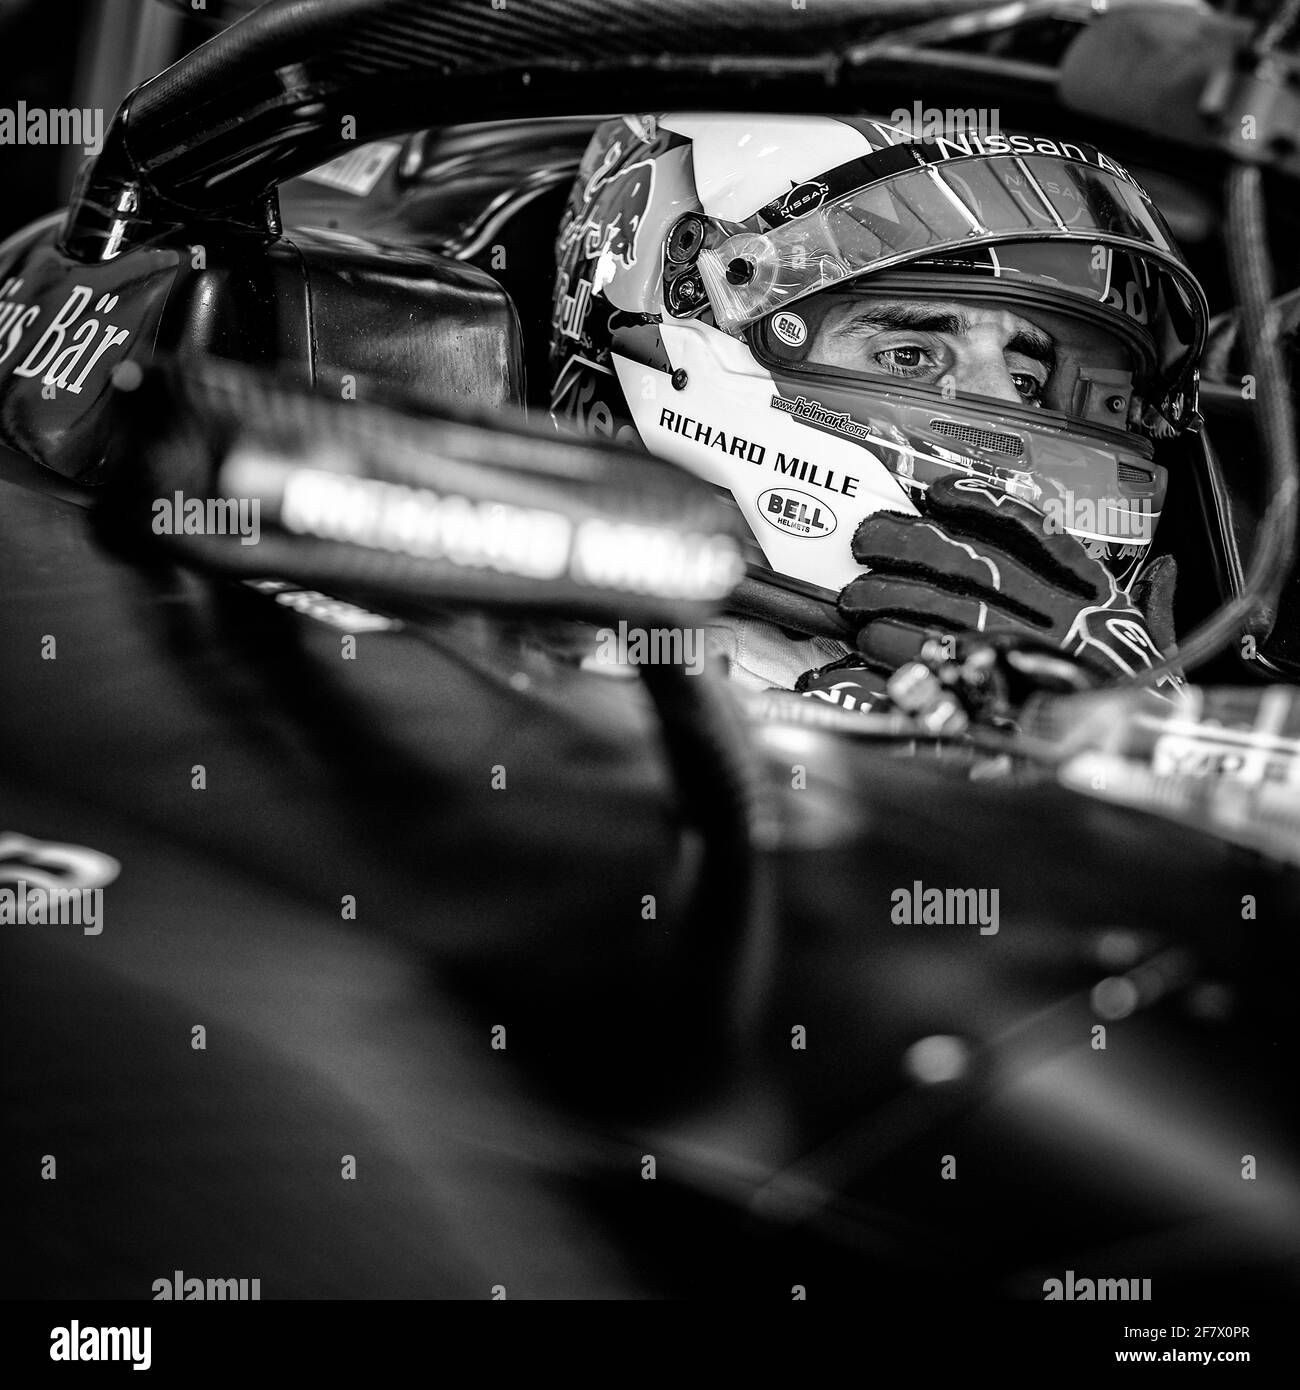 BUEMI Sébastien (SWI), Nissan e.Dams, Nissan IM02, Portrait während des Rome ePrix 2021, 3. Lauf der Formel-E-Weltmeisterschaft 2020-21, auf dem Circuito Cittadino dell'EUR vom 9. Bis 11. April in Rom, Italien - Foto François Flamand / DPPI Stockfoto